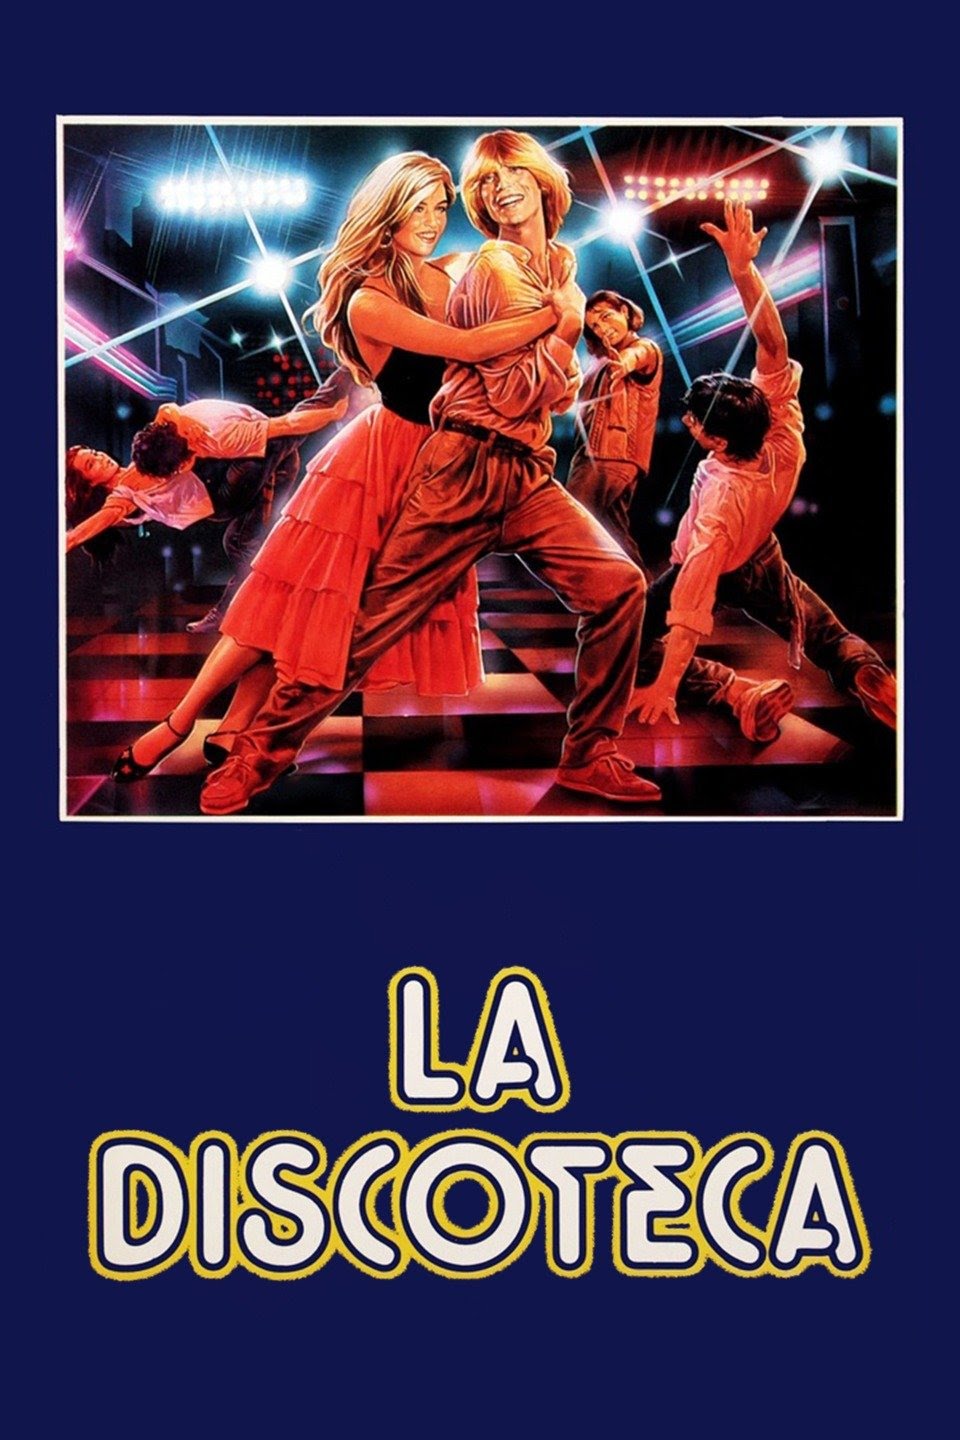 La discoteca (1983)